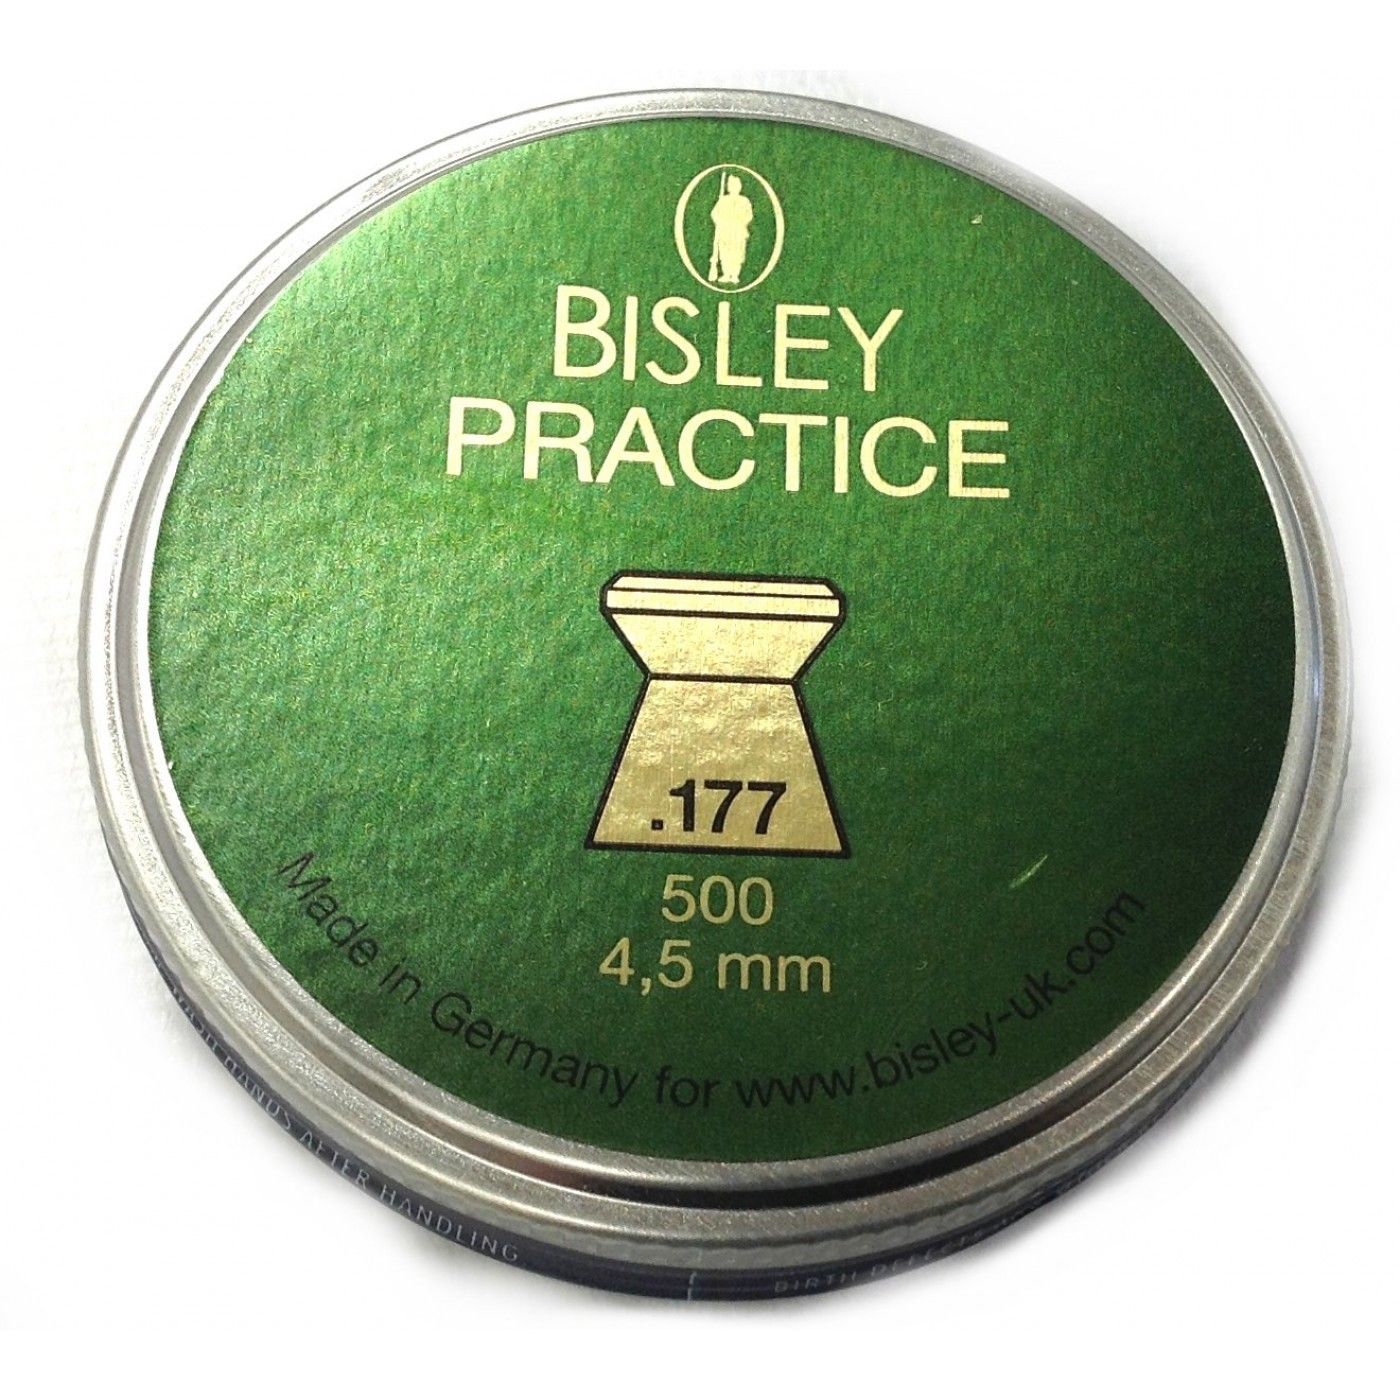 Bisley Practice .177 (4.5mm)